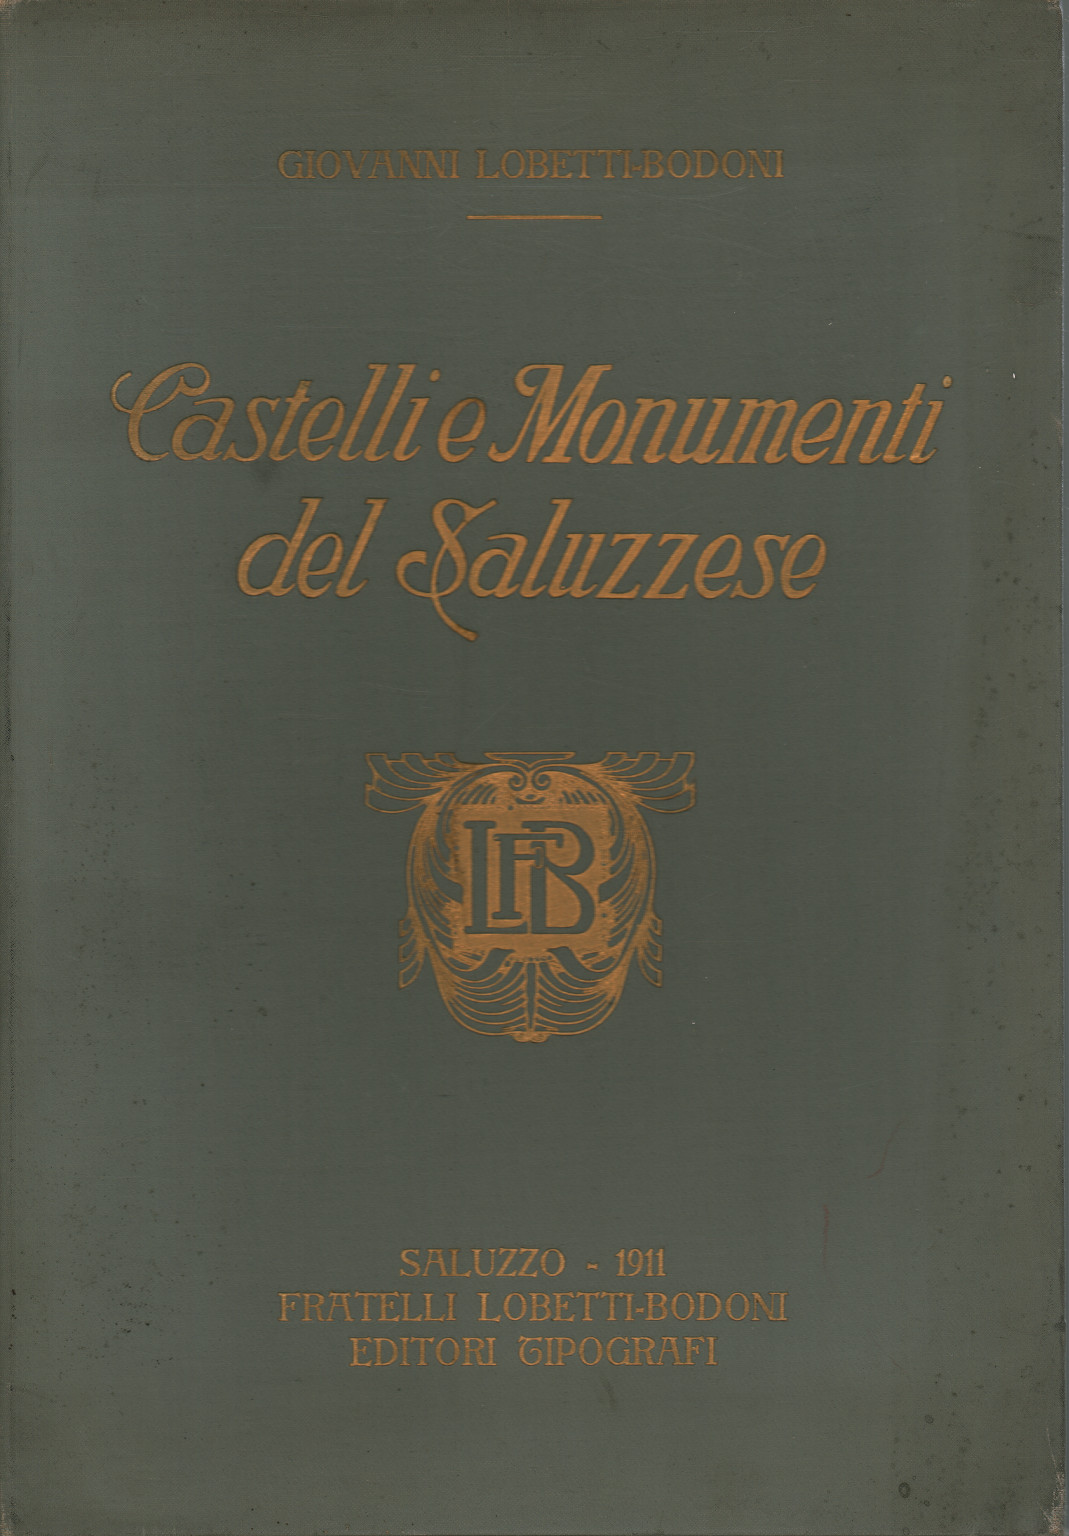 Châteaux et monuments de Saluzzo, s.a.